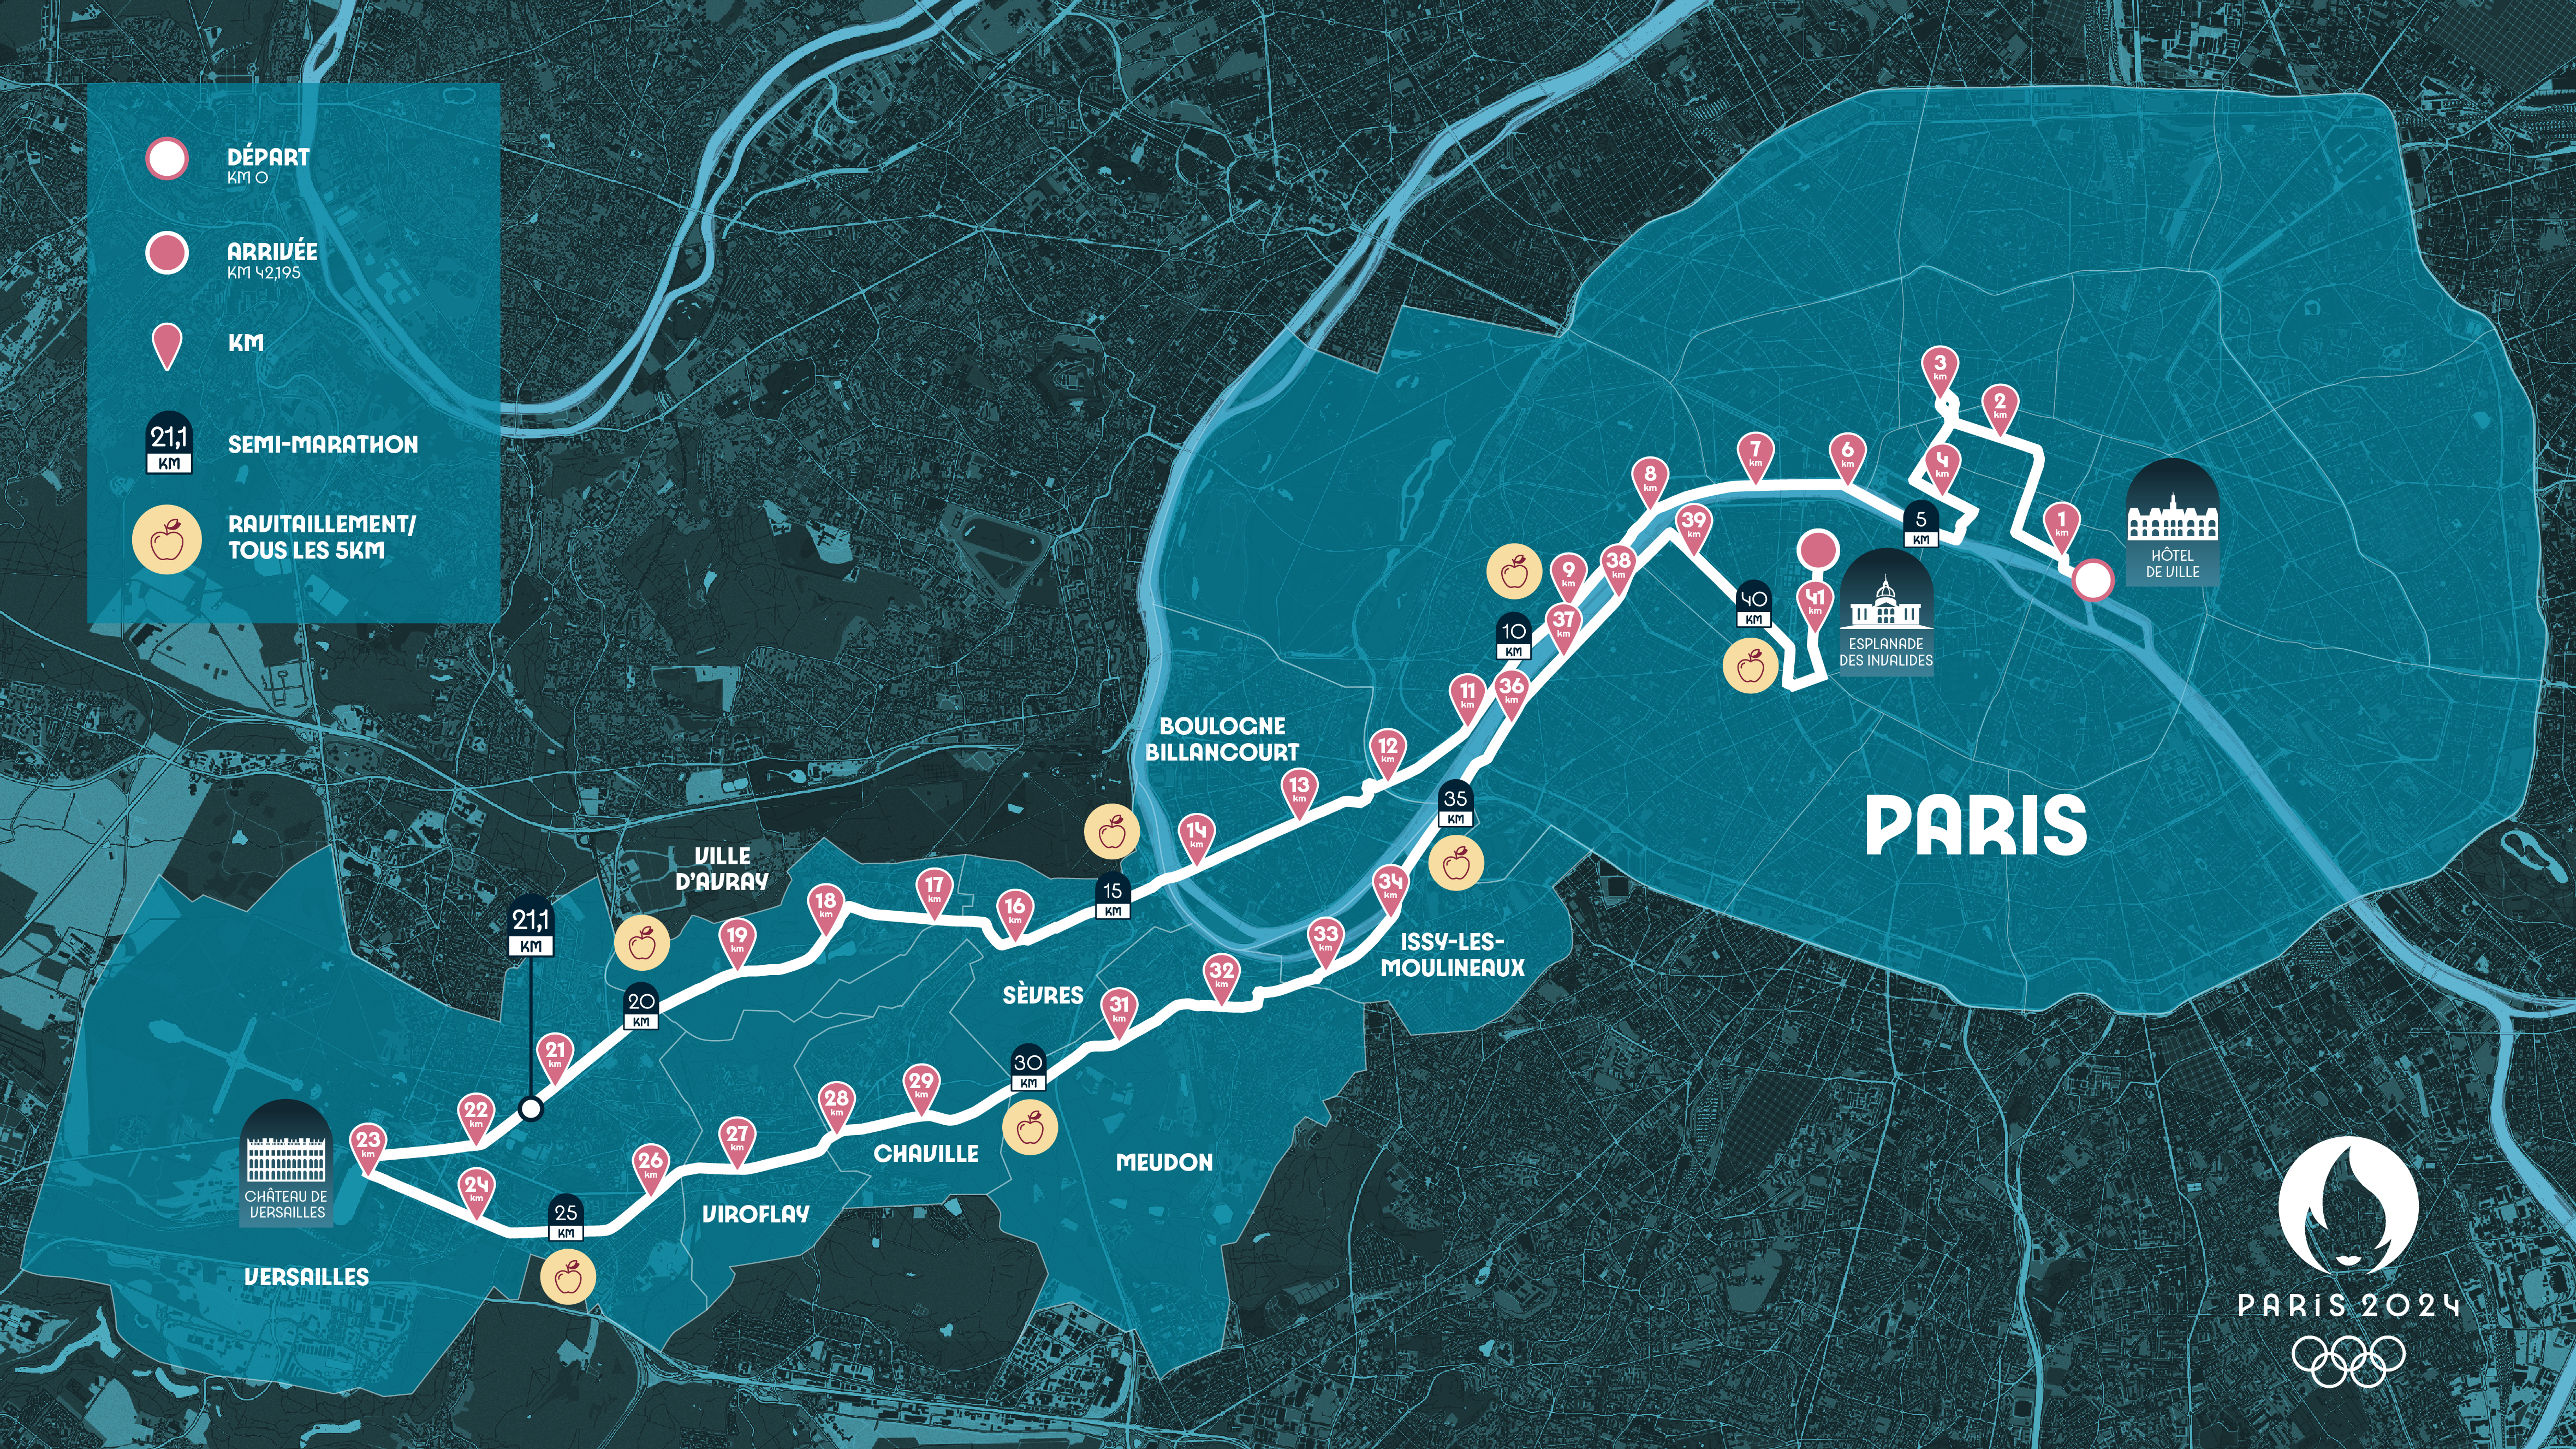 Parcours officiel du marathon olympique de Paris 2024 avec les différents points d'intérêt sur le trajet. 